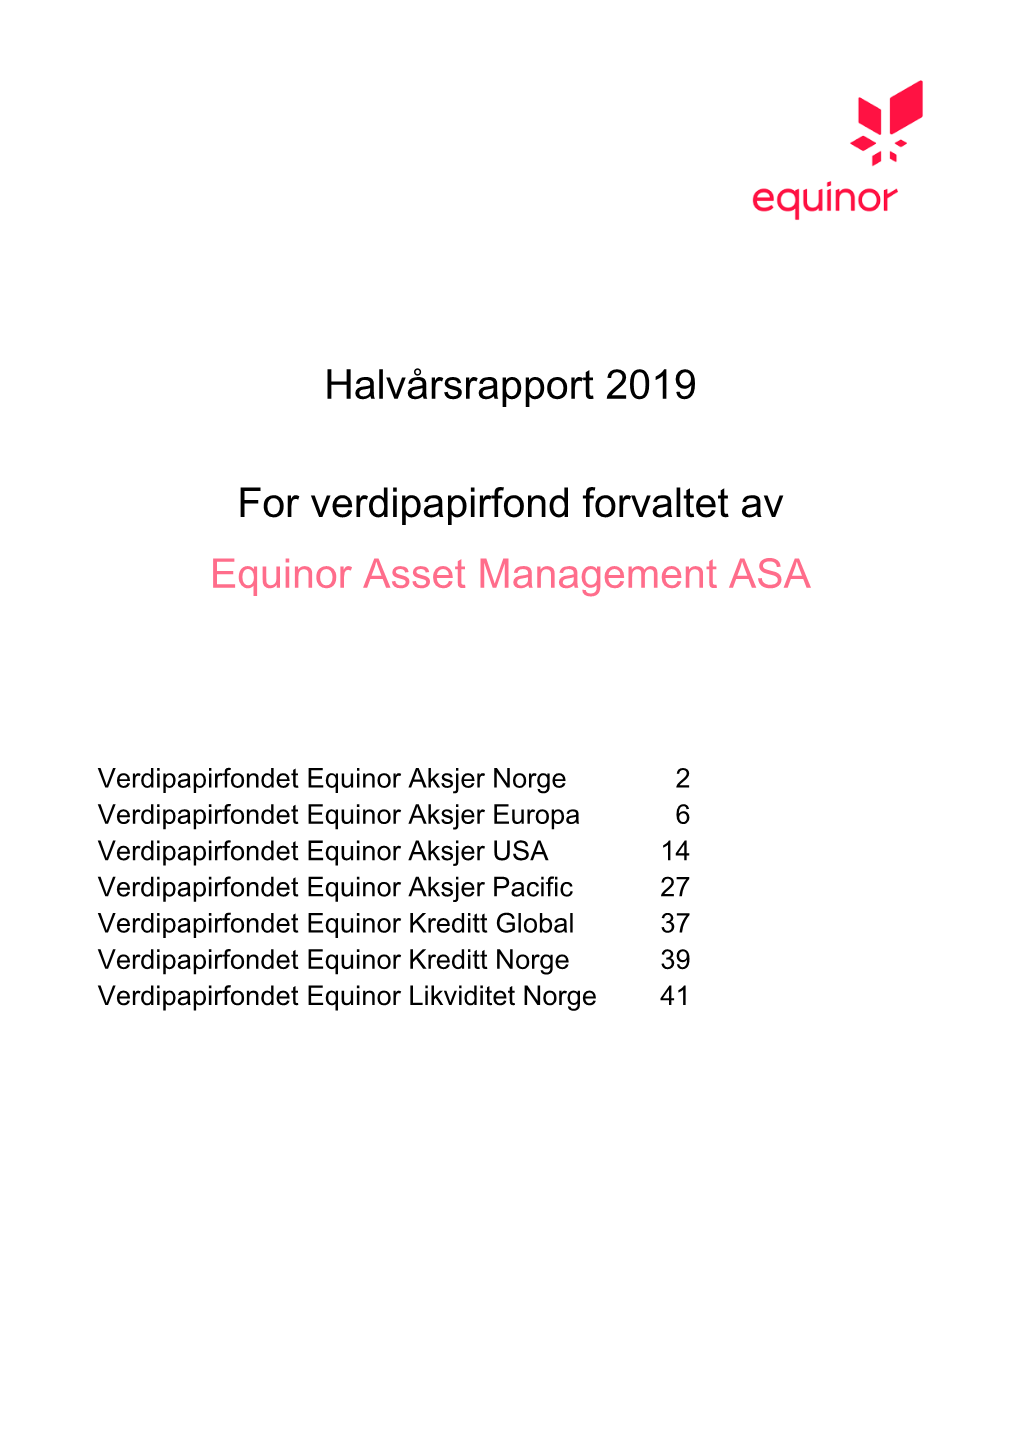 Halvårsrapport 2019 for Verdipapirfond Forvaltet Av Equinor